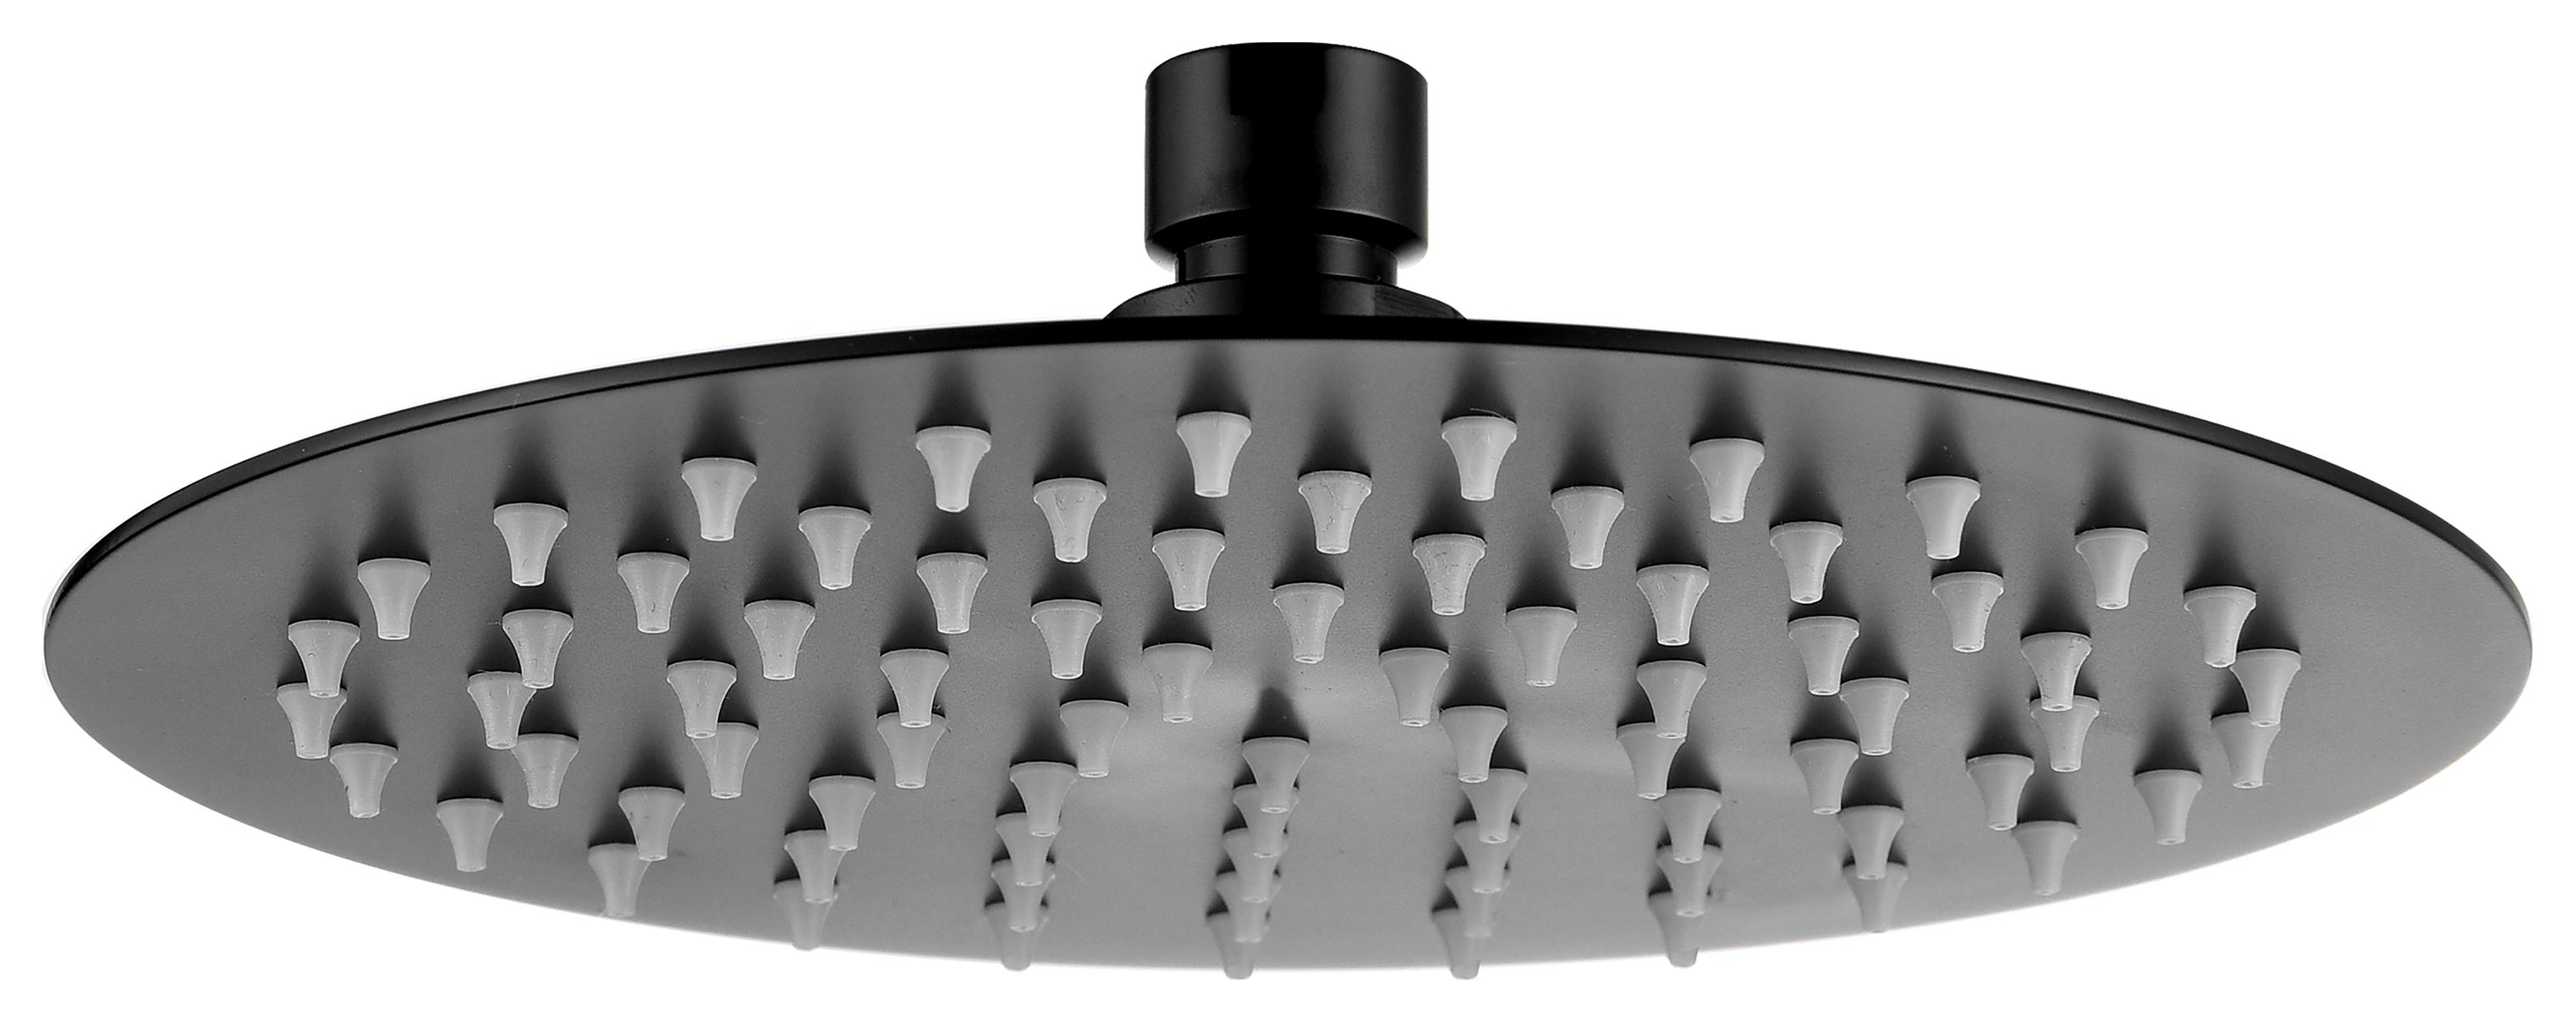 Image of Bristan Round Slimline Black Shower Head - 200mm